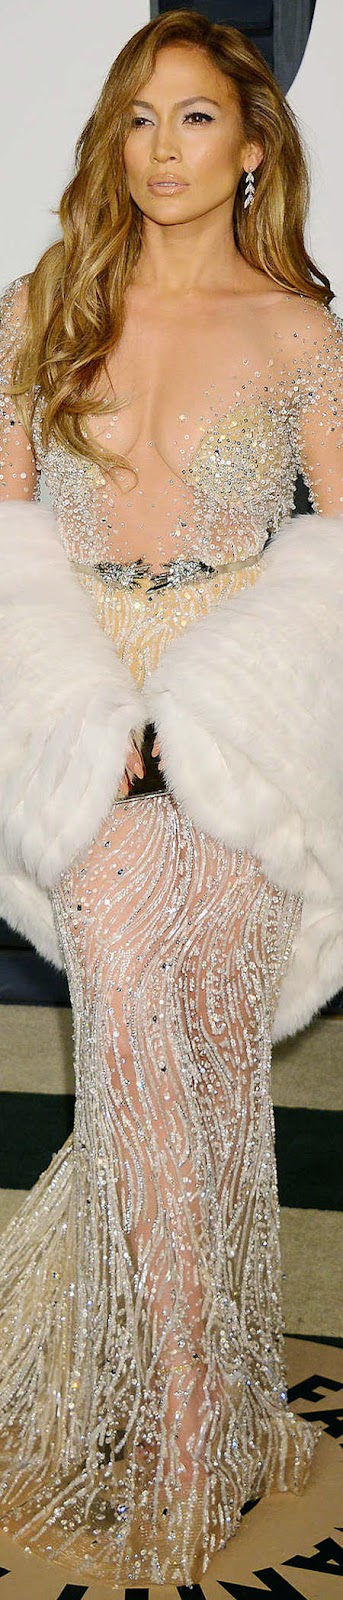 2015 Vanity Fair Oscar Party Jennifer Lopez